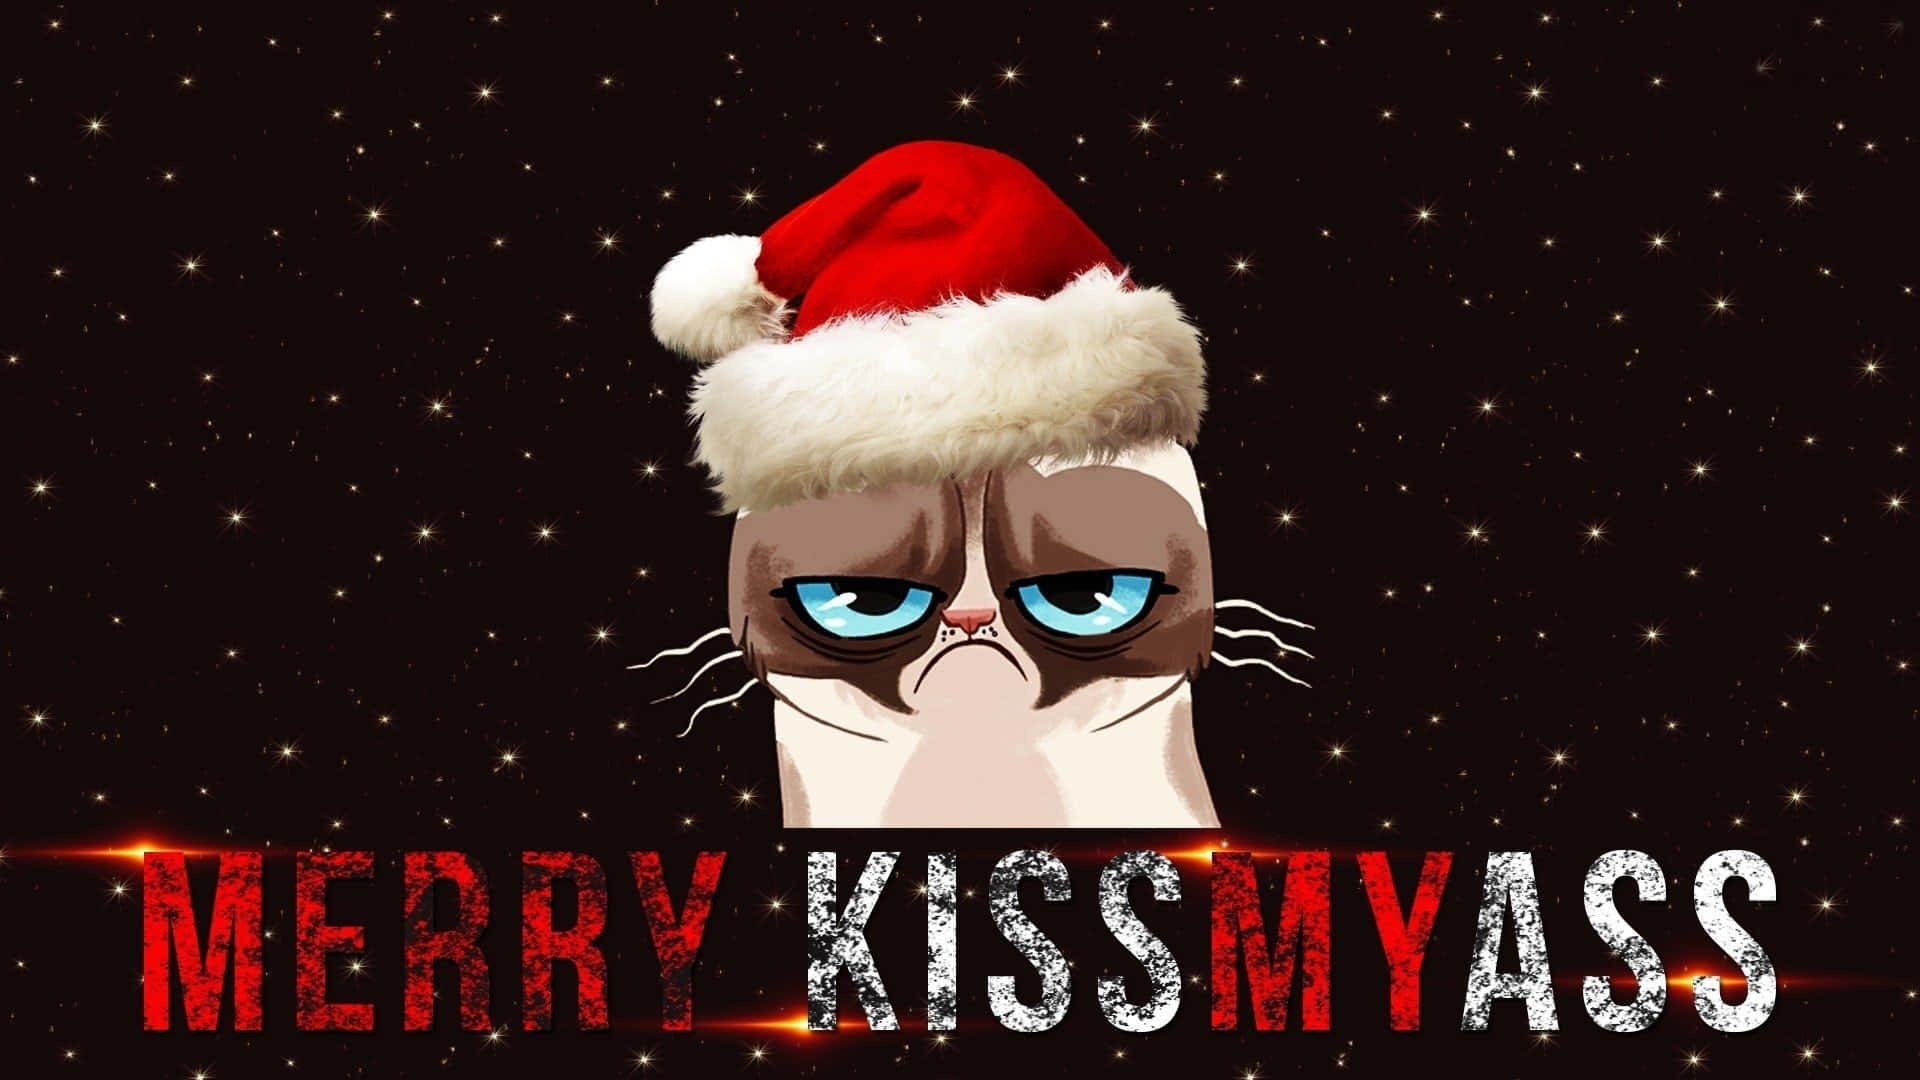 Witzigerweihnachts-zoom-hintergrund Mit Grummeliger Katze Als Grafik-kunst